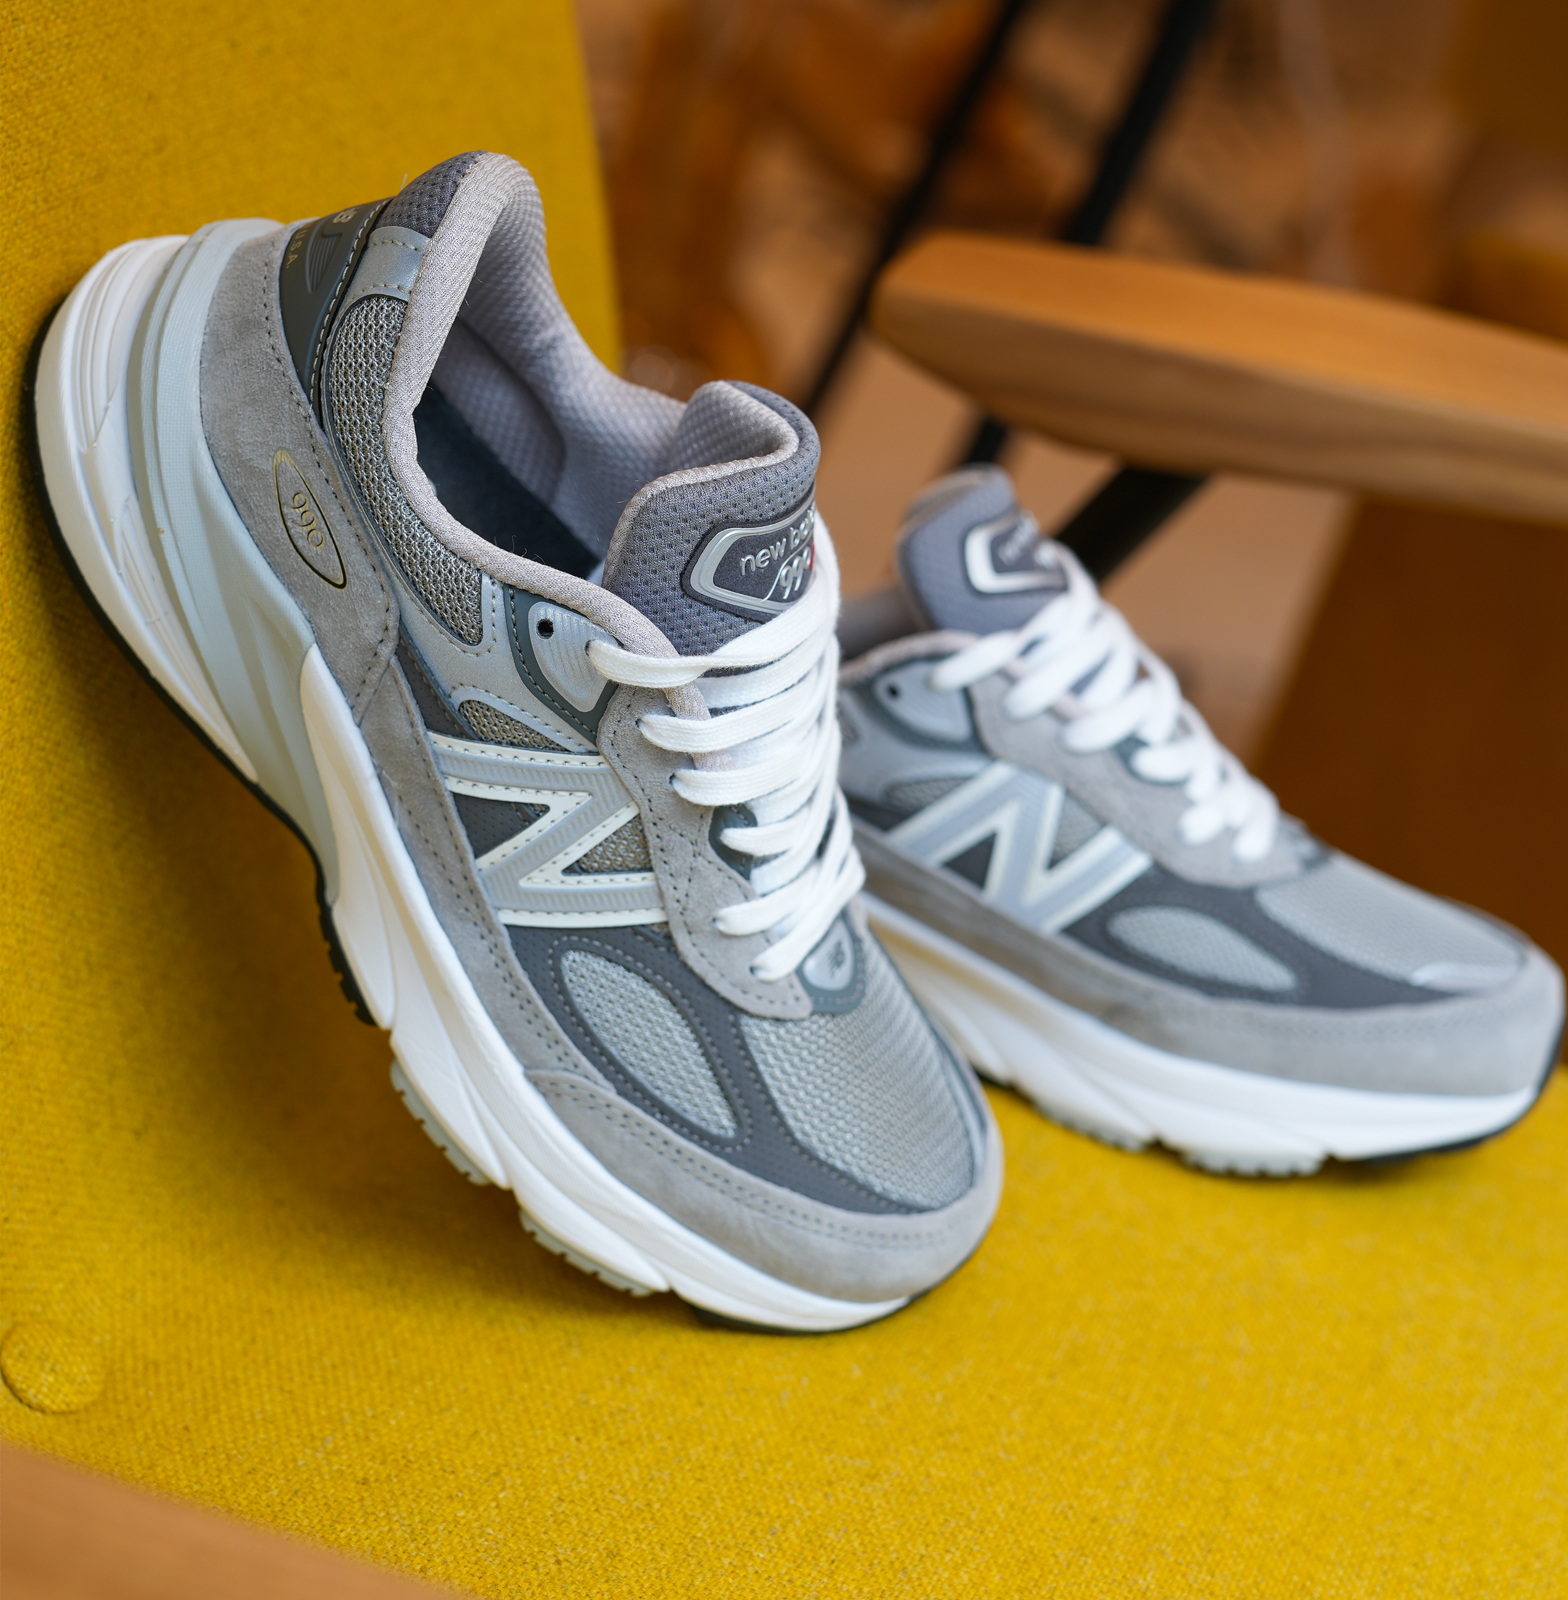 W990gl6 – New Balance | L'Original - Sneakers Shop Belgium